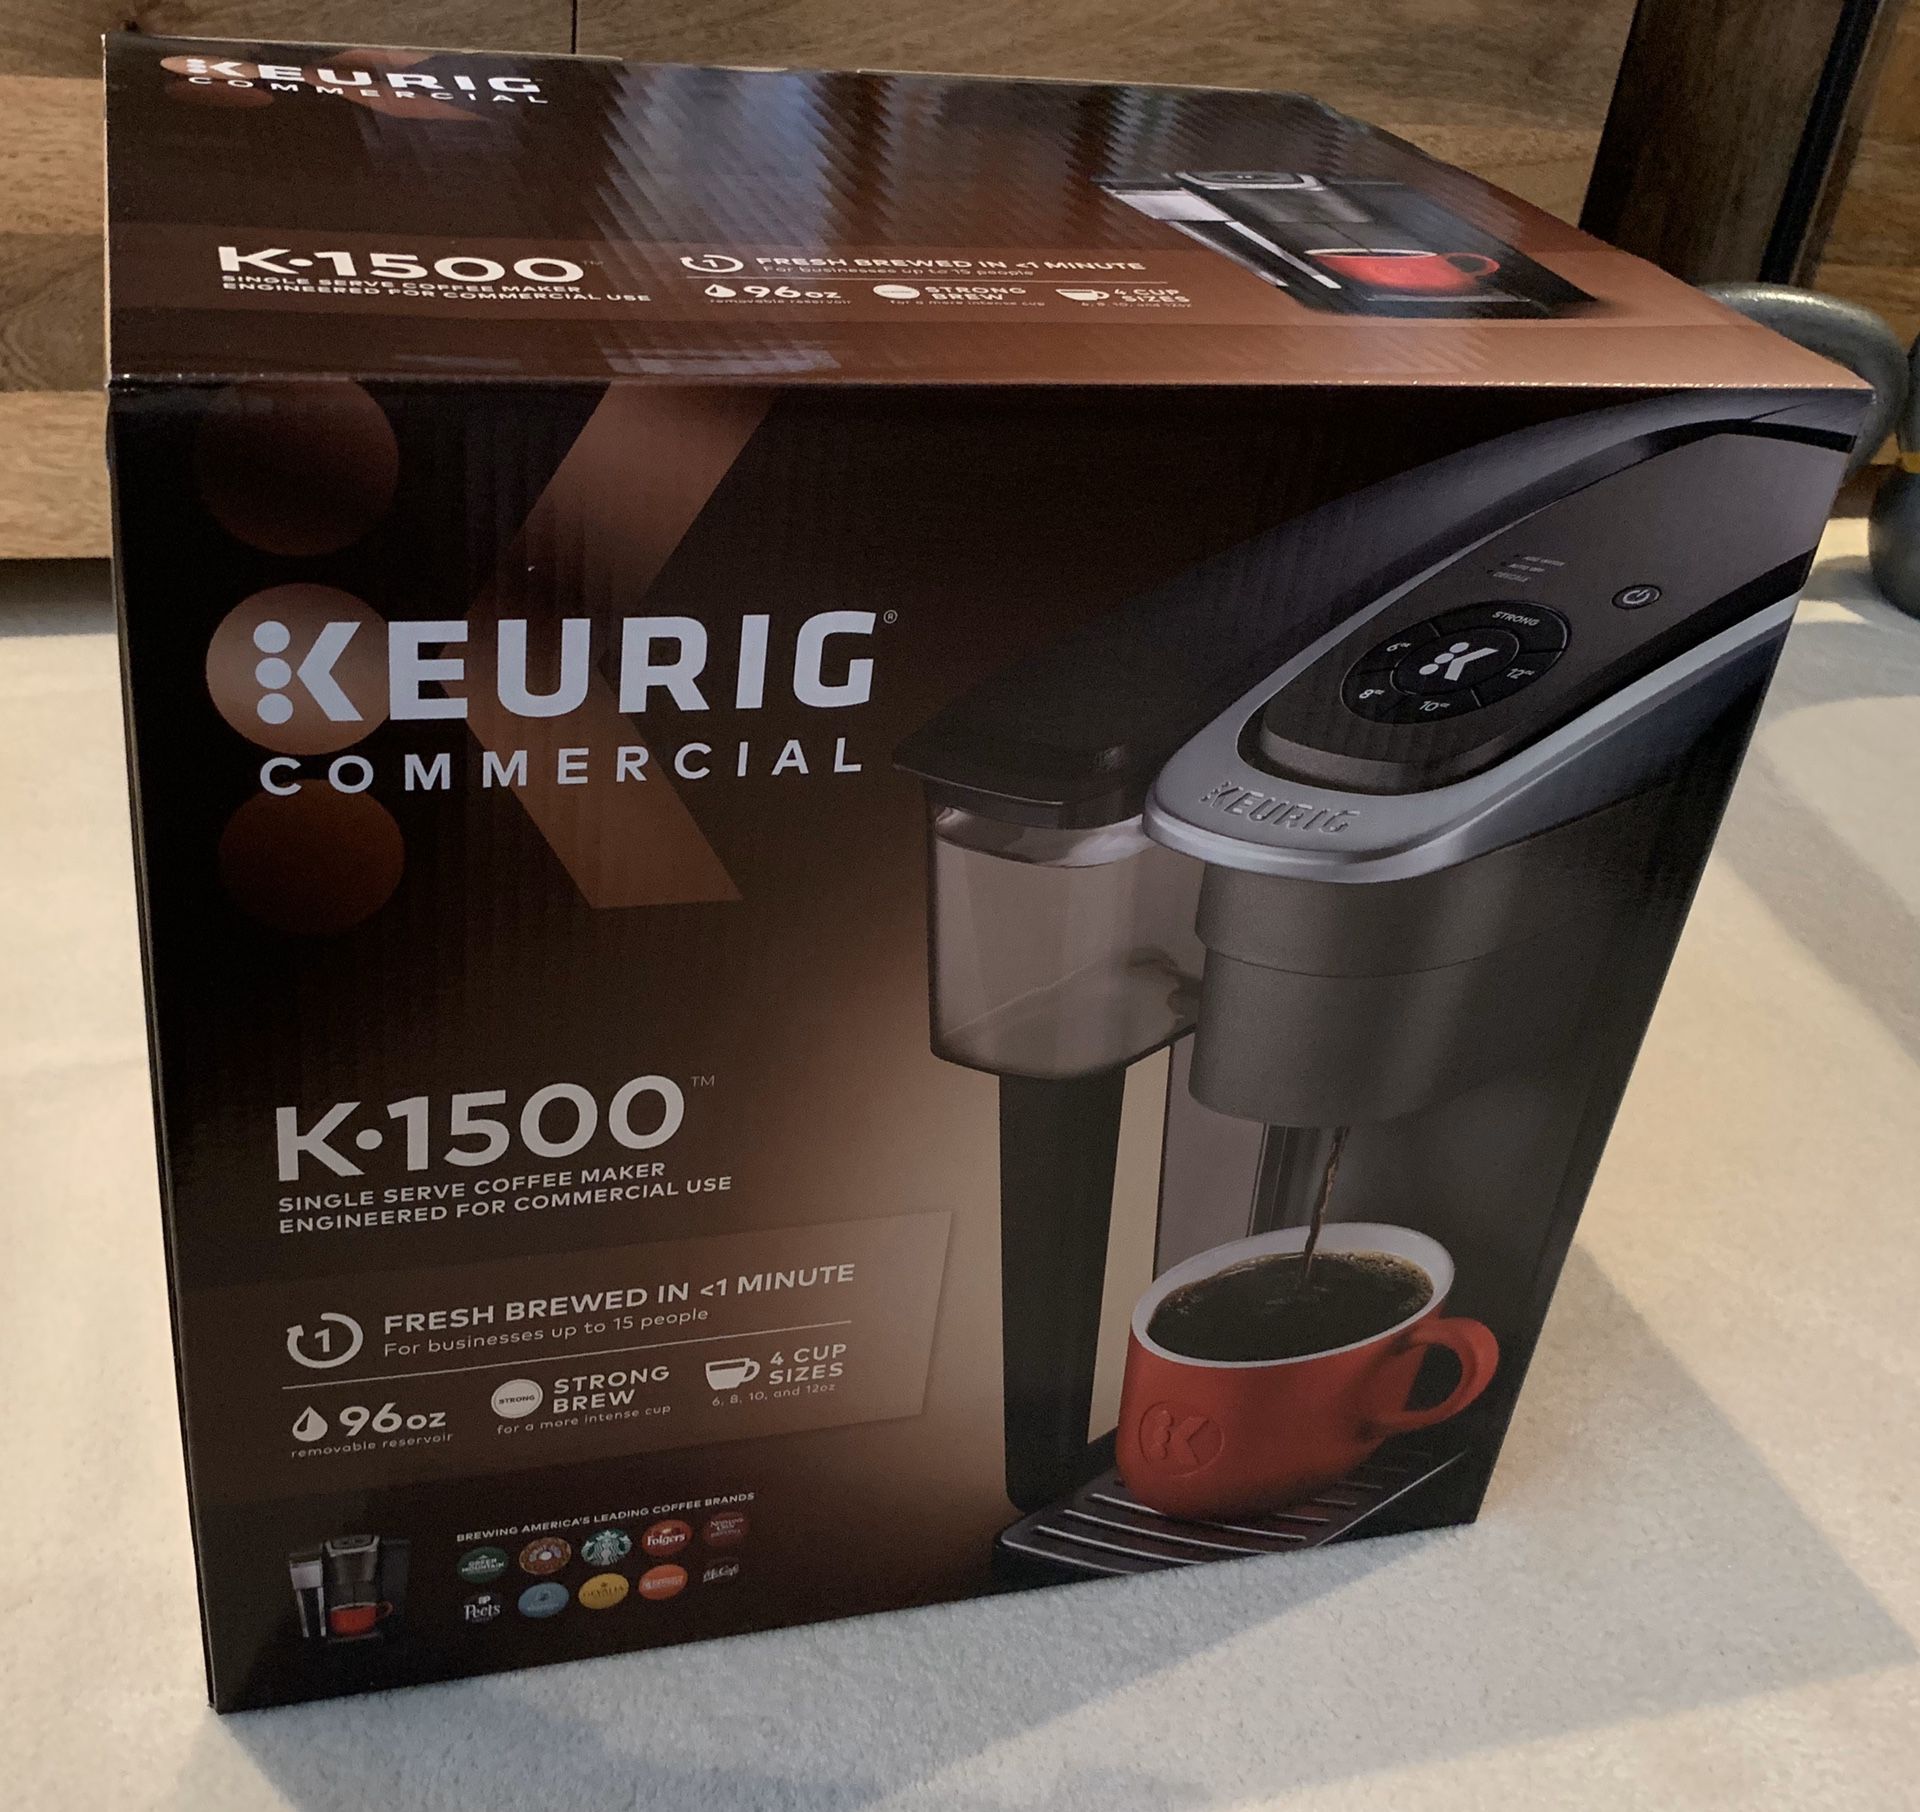 Keurig K-1500 coffee maker